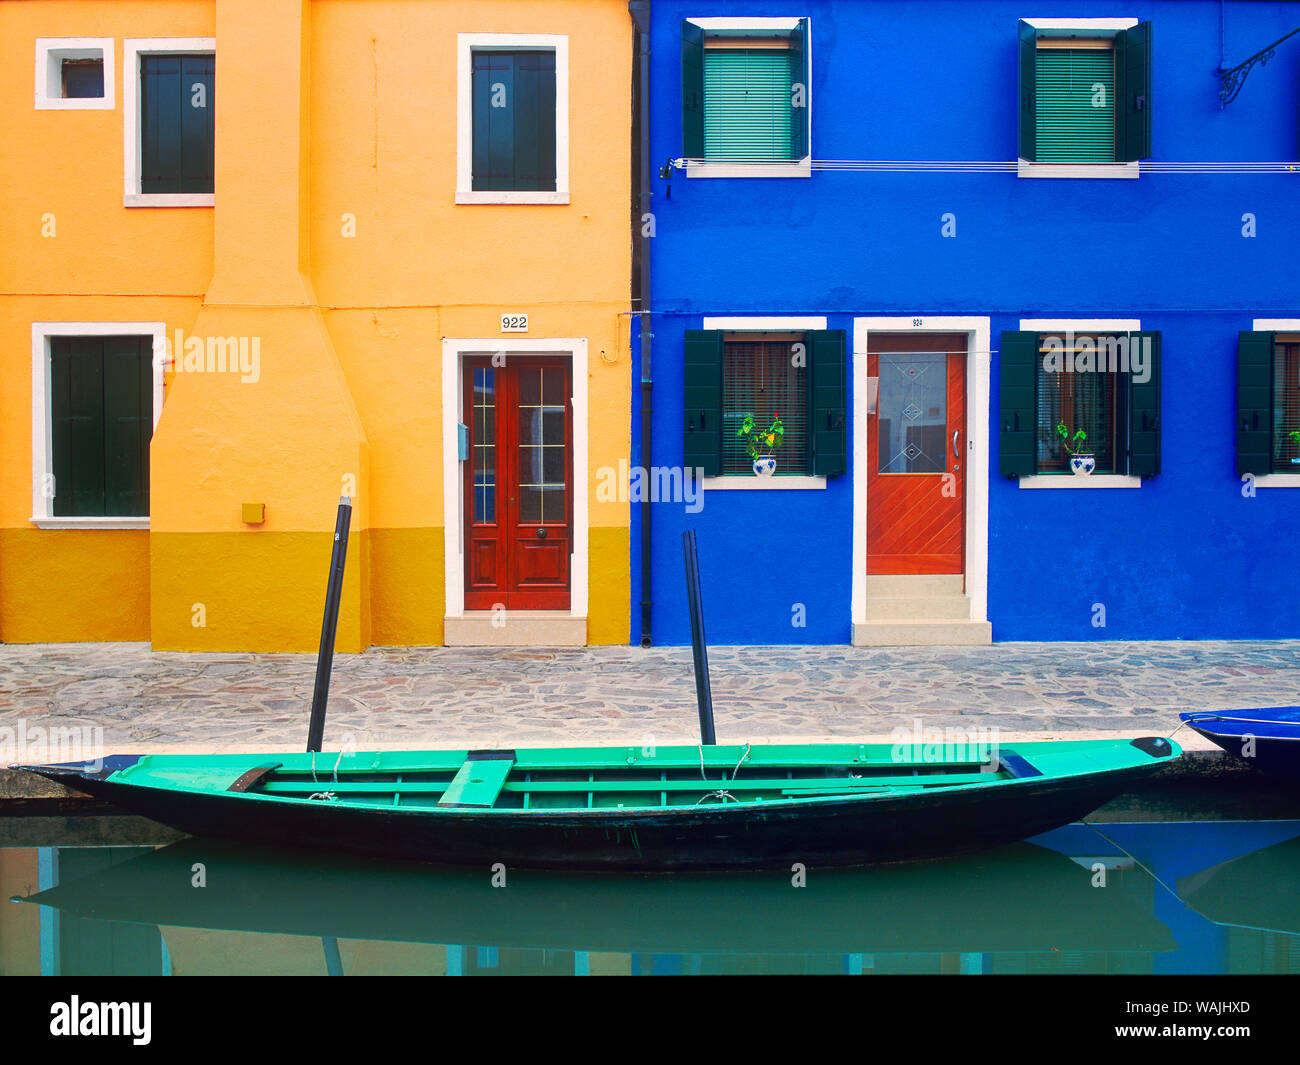 L'Italia, Burano. Casa colorati esterni e barca nel canale. Credito come: Jim Nilsen Jaynes / Galleria / DanitaDelimont.com Foto Stock